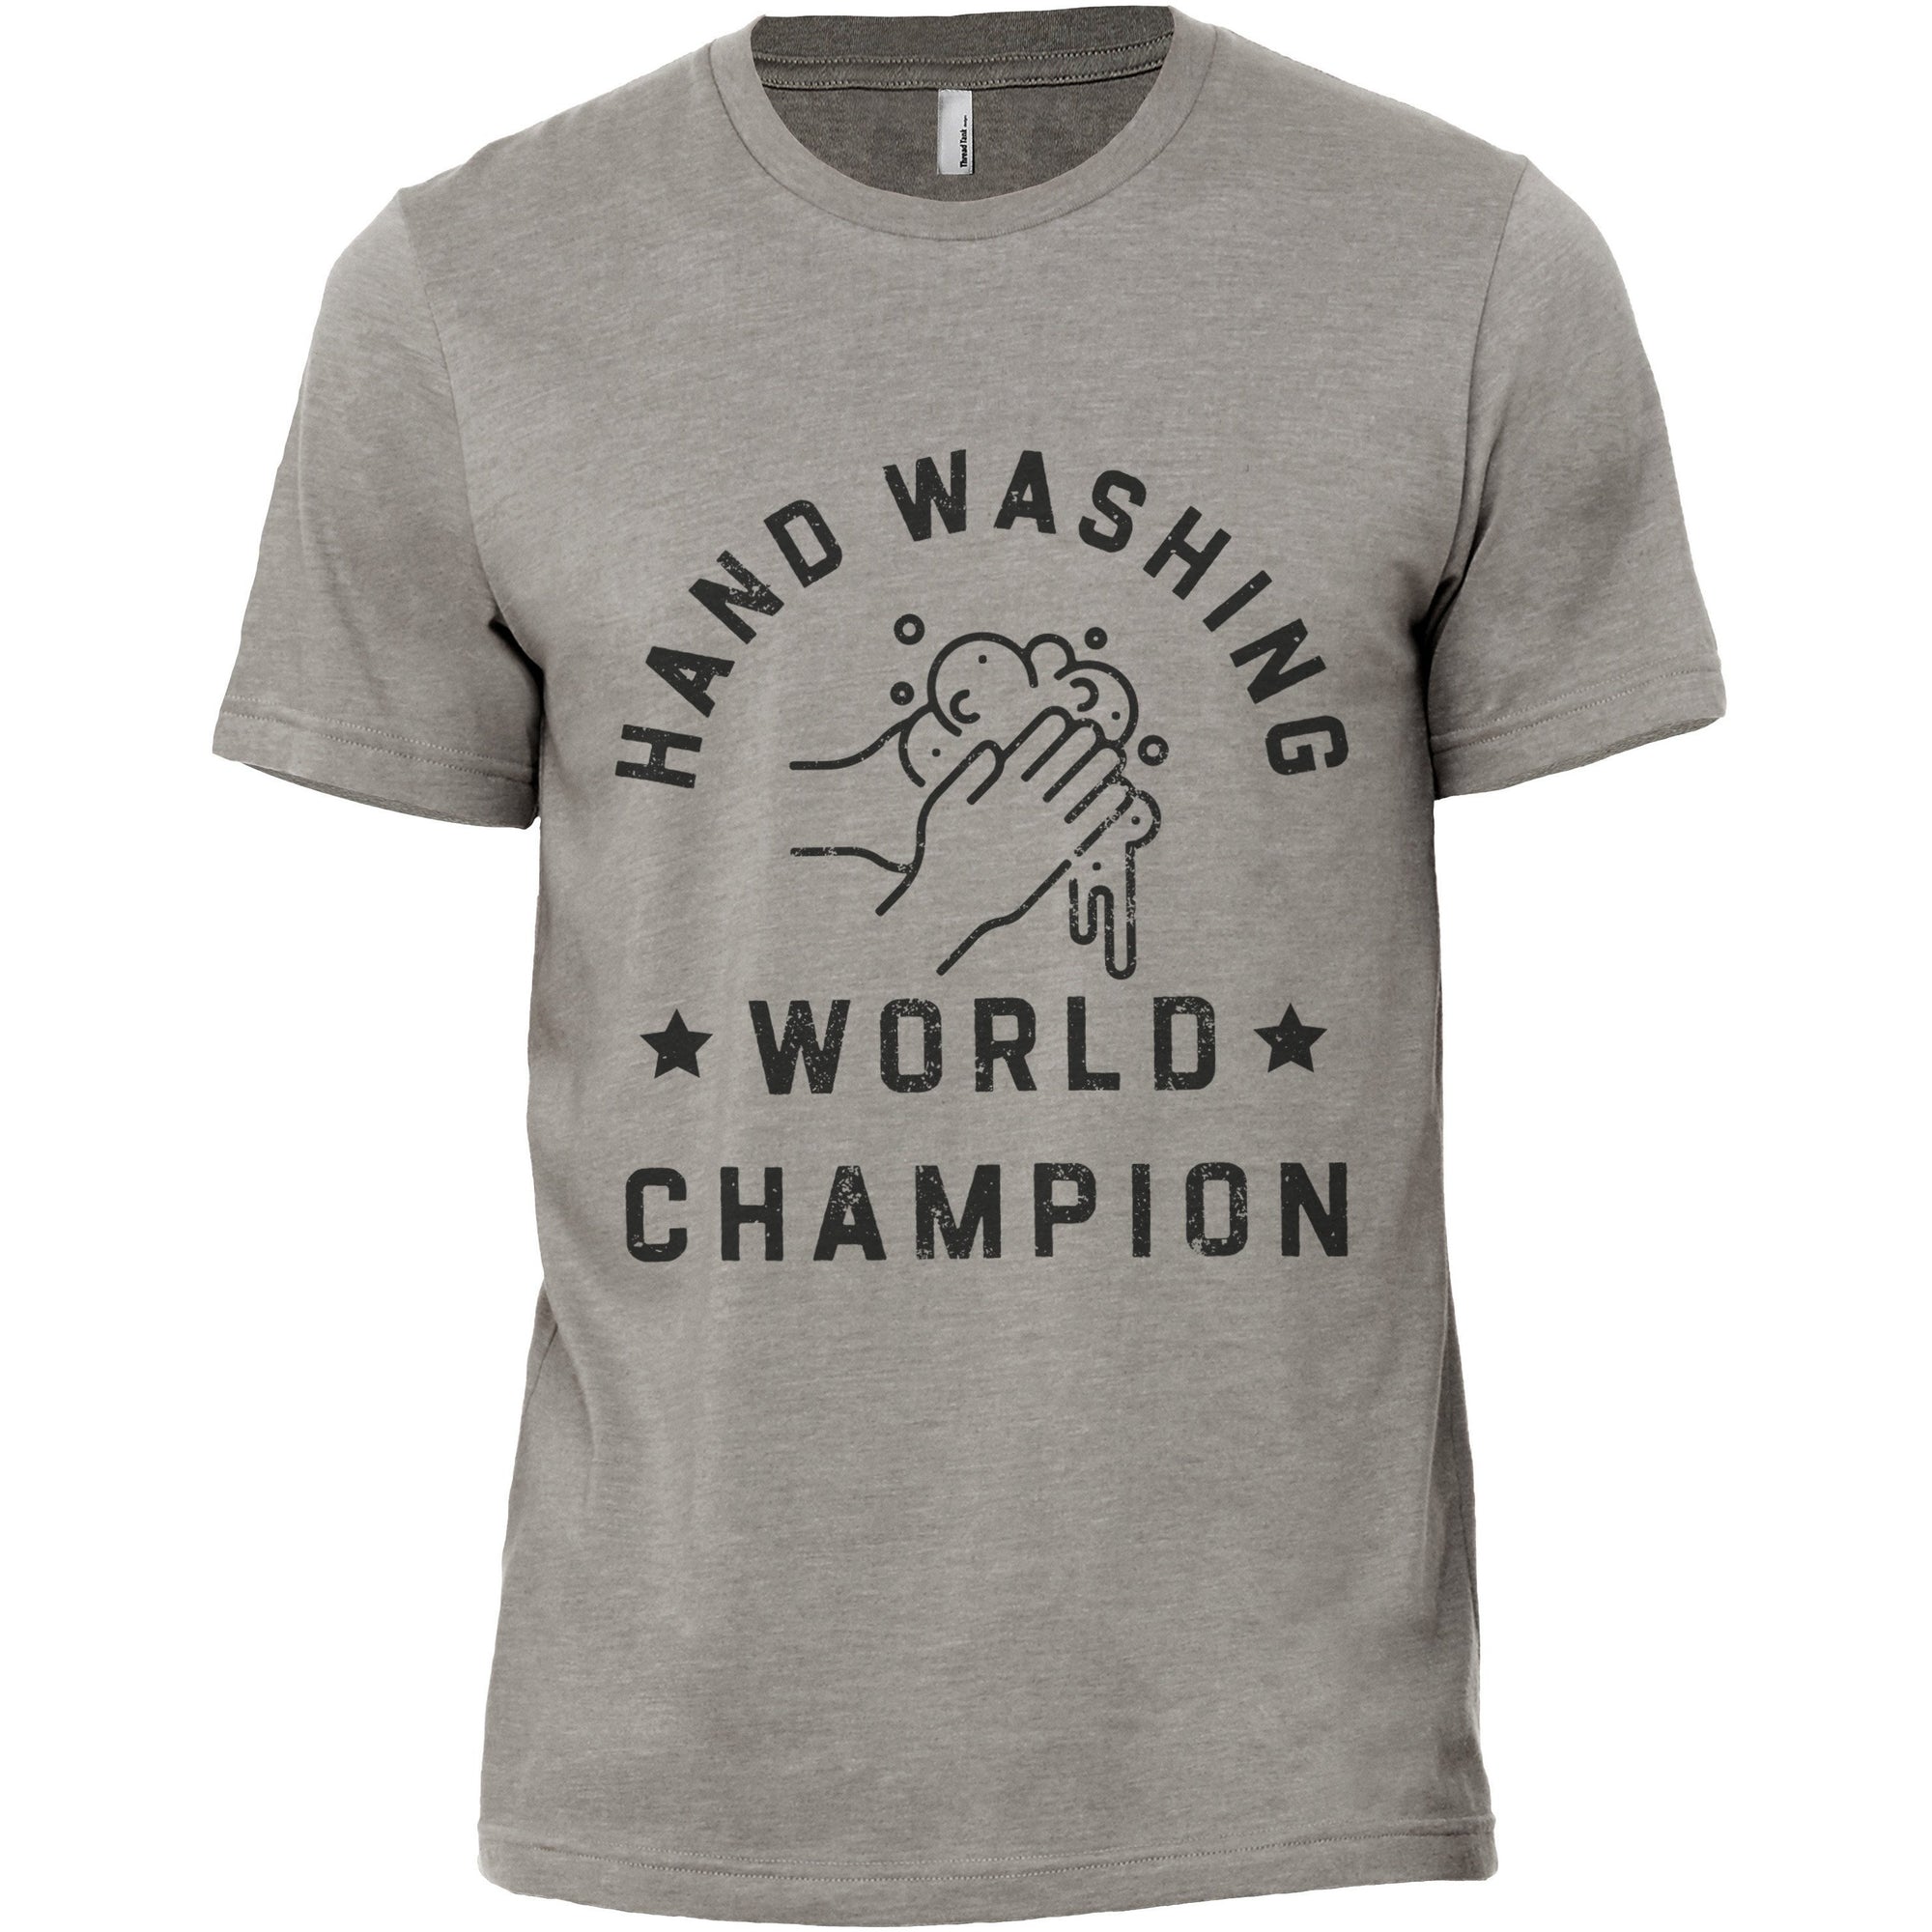 Hand Washing World Champion Military Grey Printed Graphic Men's Crew T-Shirt Tee